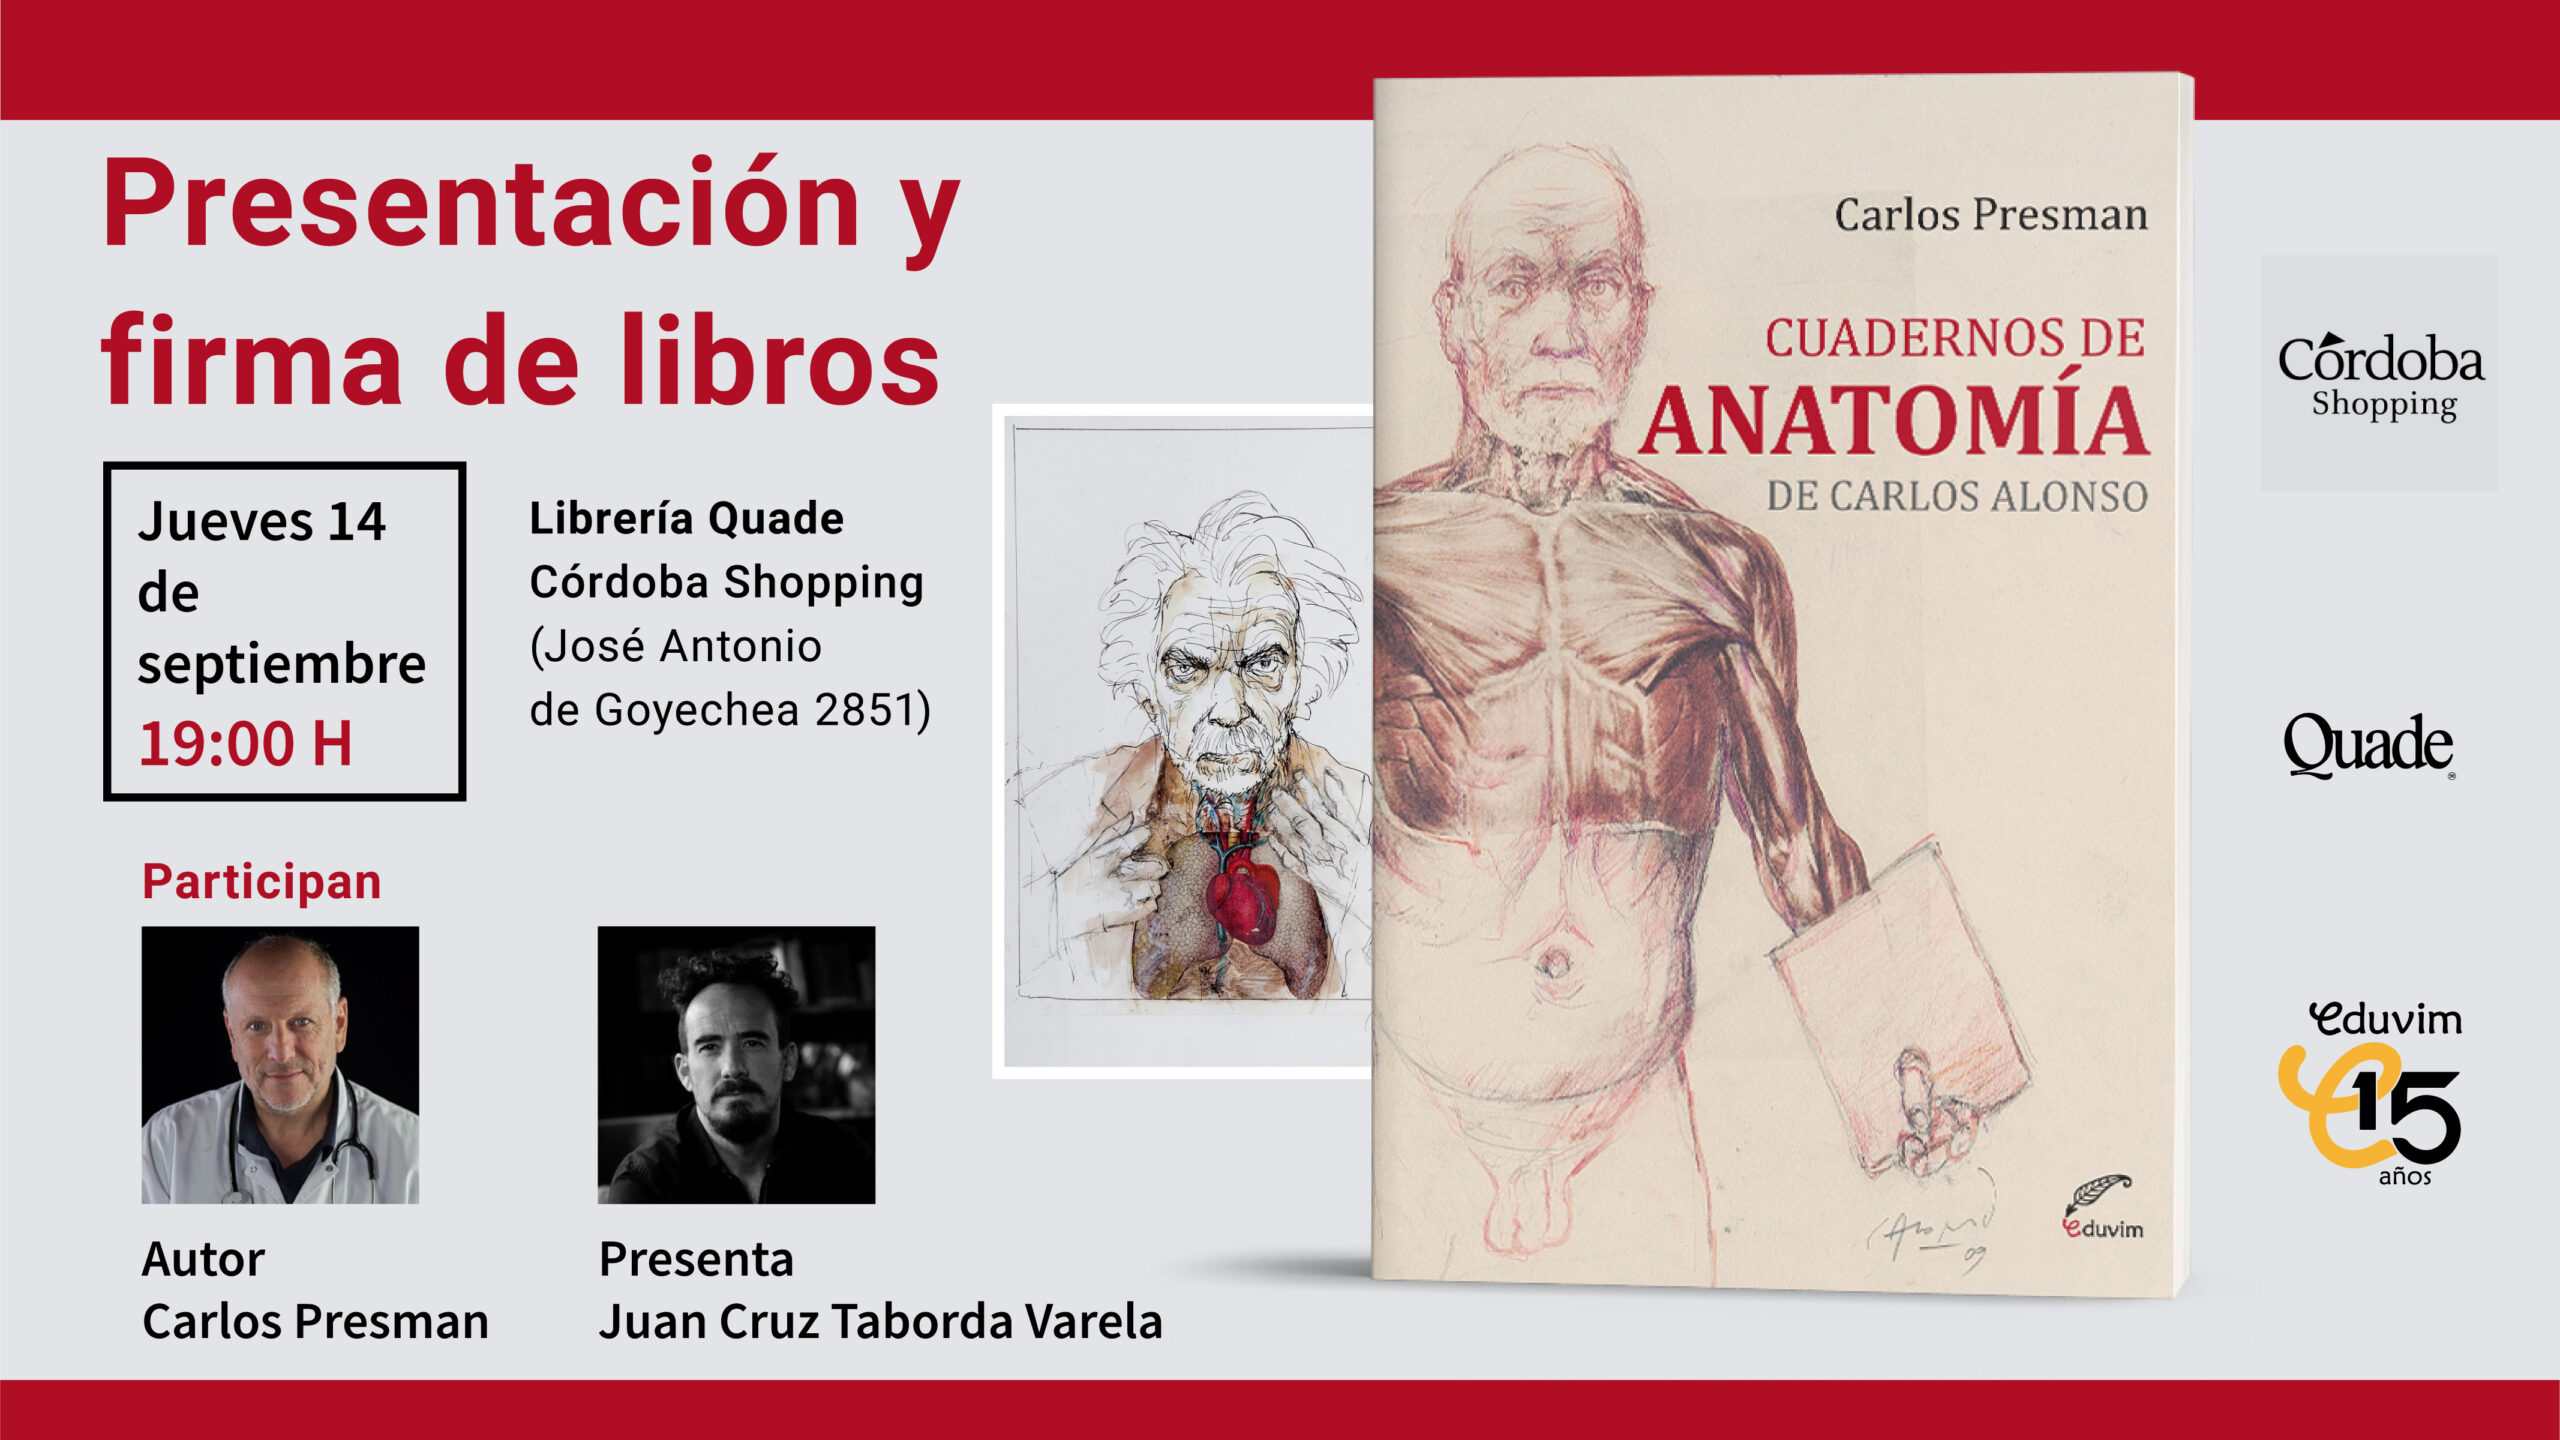 Presentación del libro y firma de ejemplares de “Cuadernos de anatomía de Carlos Alonso”